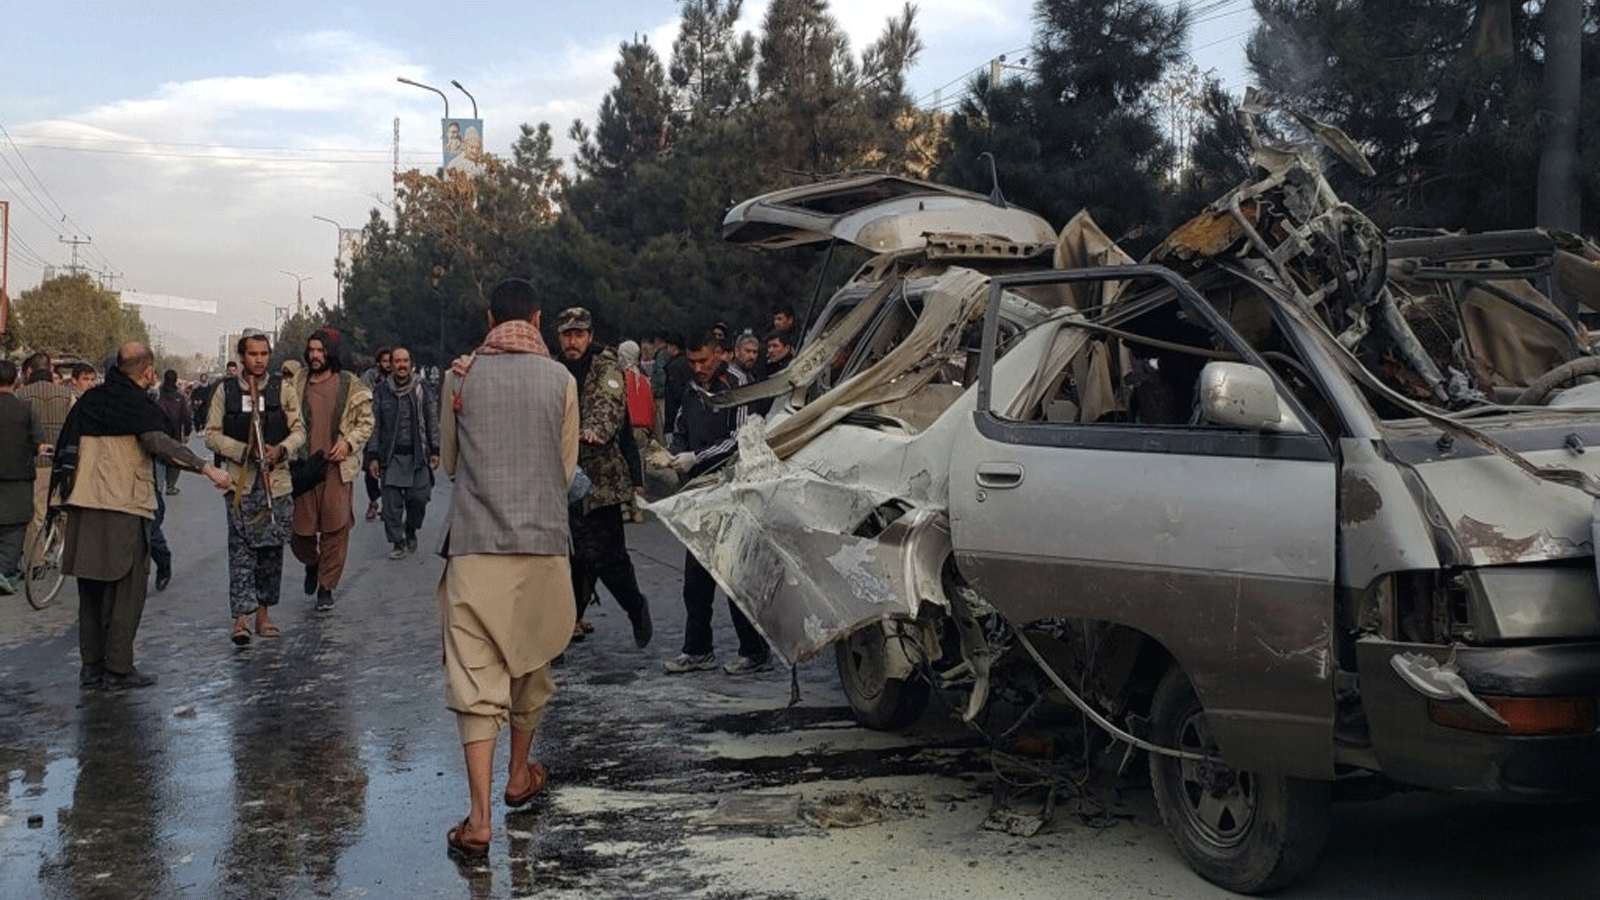 بقايا حافلة صغيرة بعد أحد تفجيرين في كابول تبناها الفرع المحلي لتنظيم الدولة الإسلامية